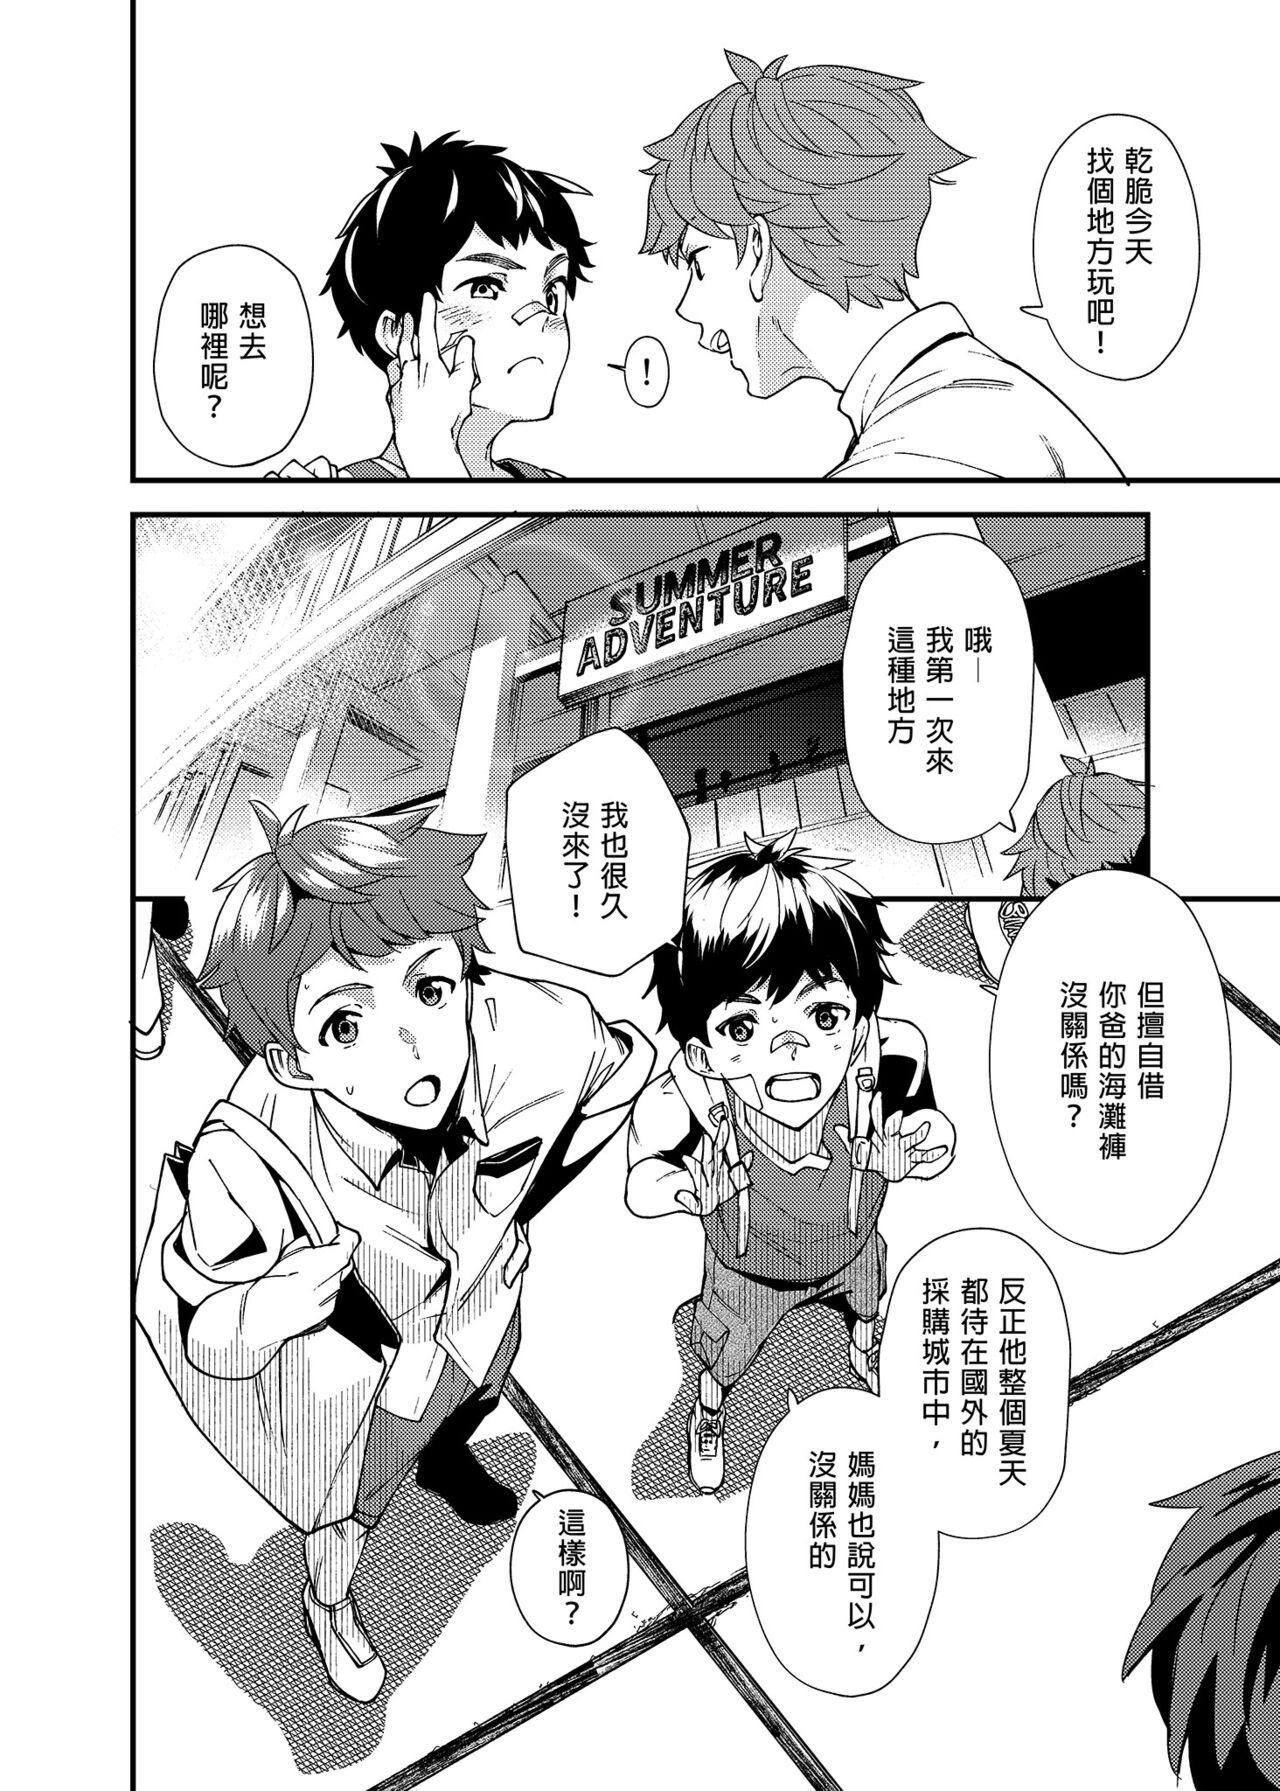 Self Na no ka tattara | 過了7天後 - Original Hymen - Page 7